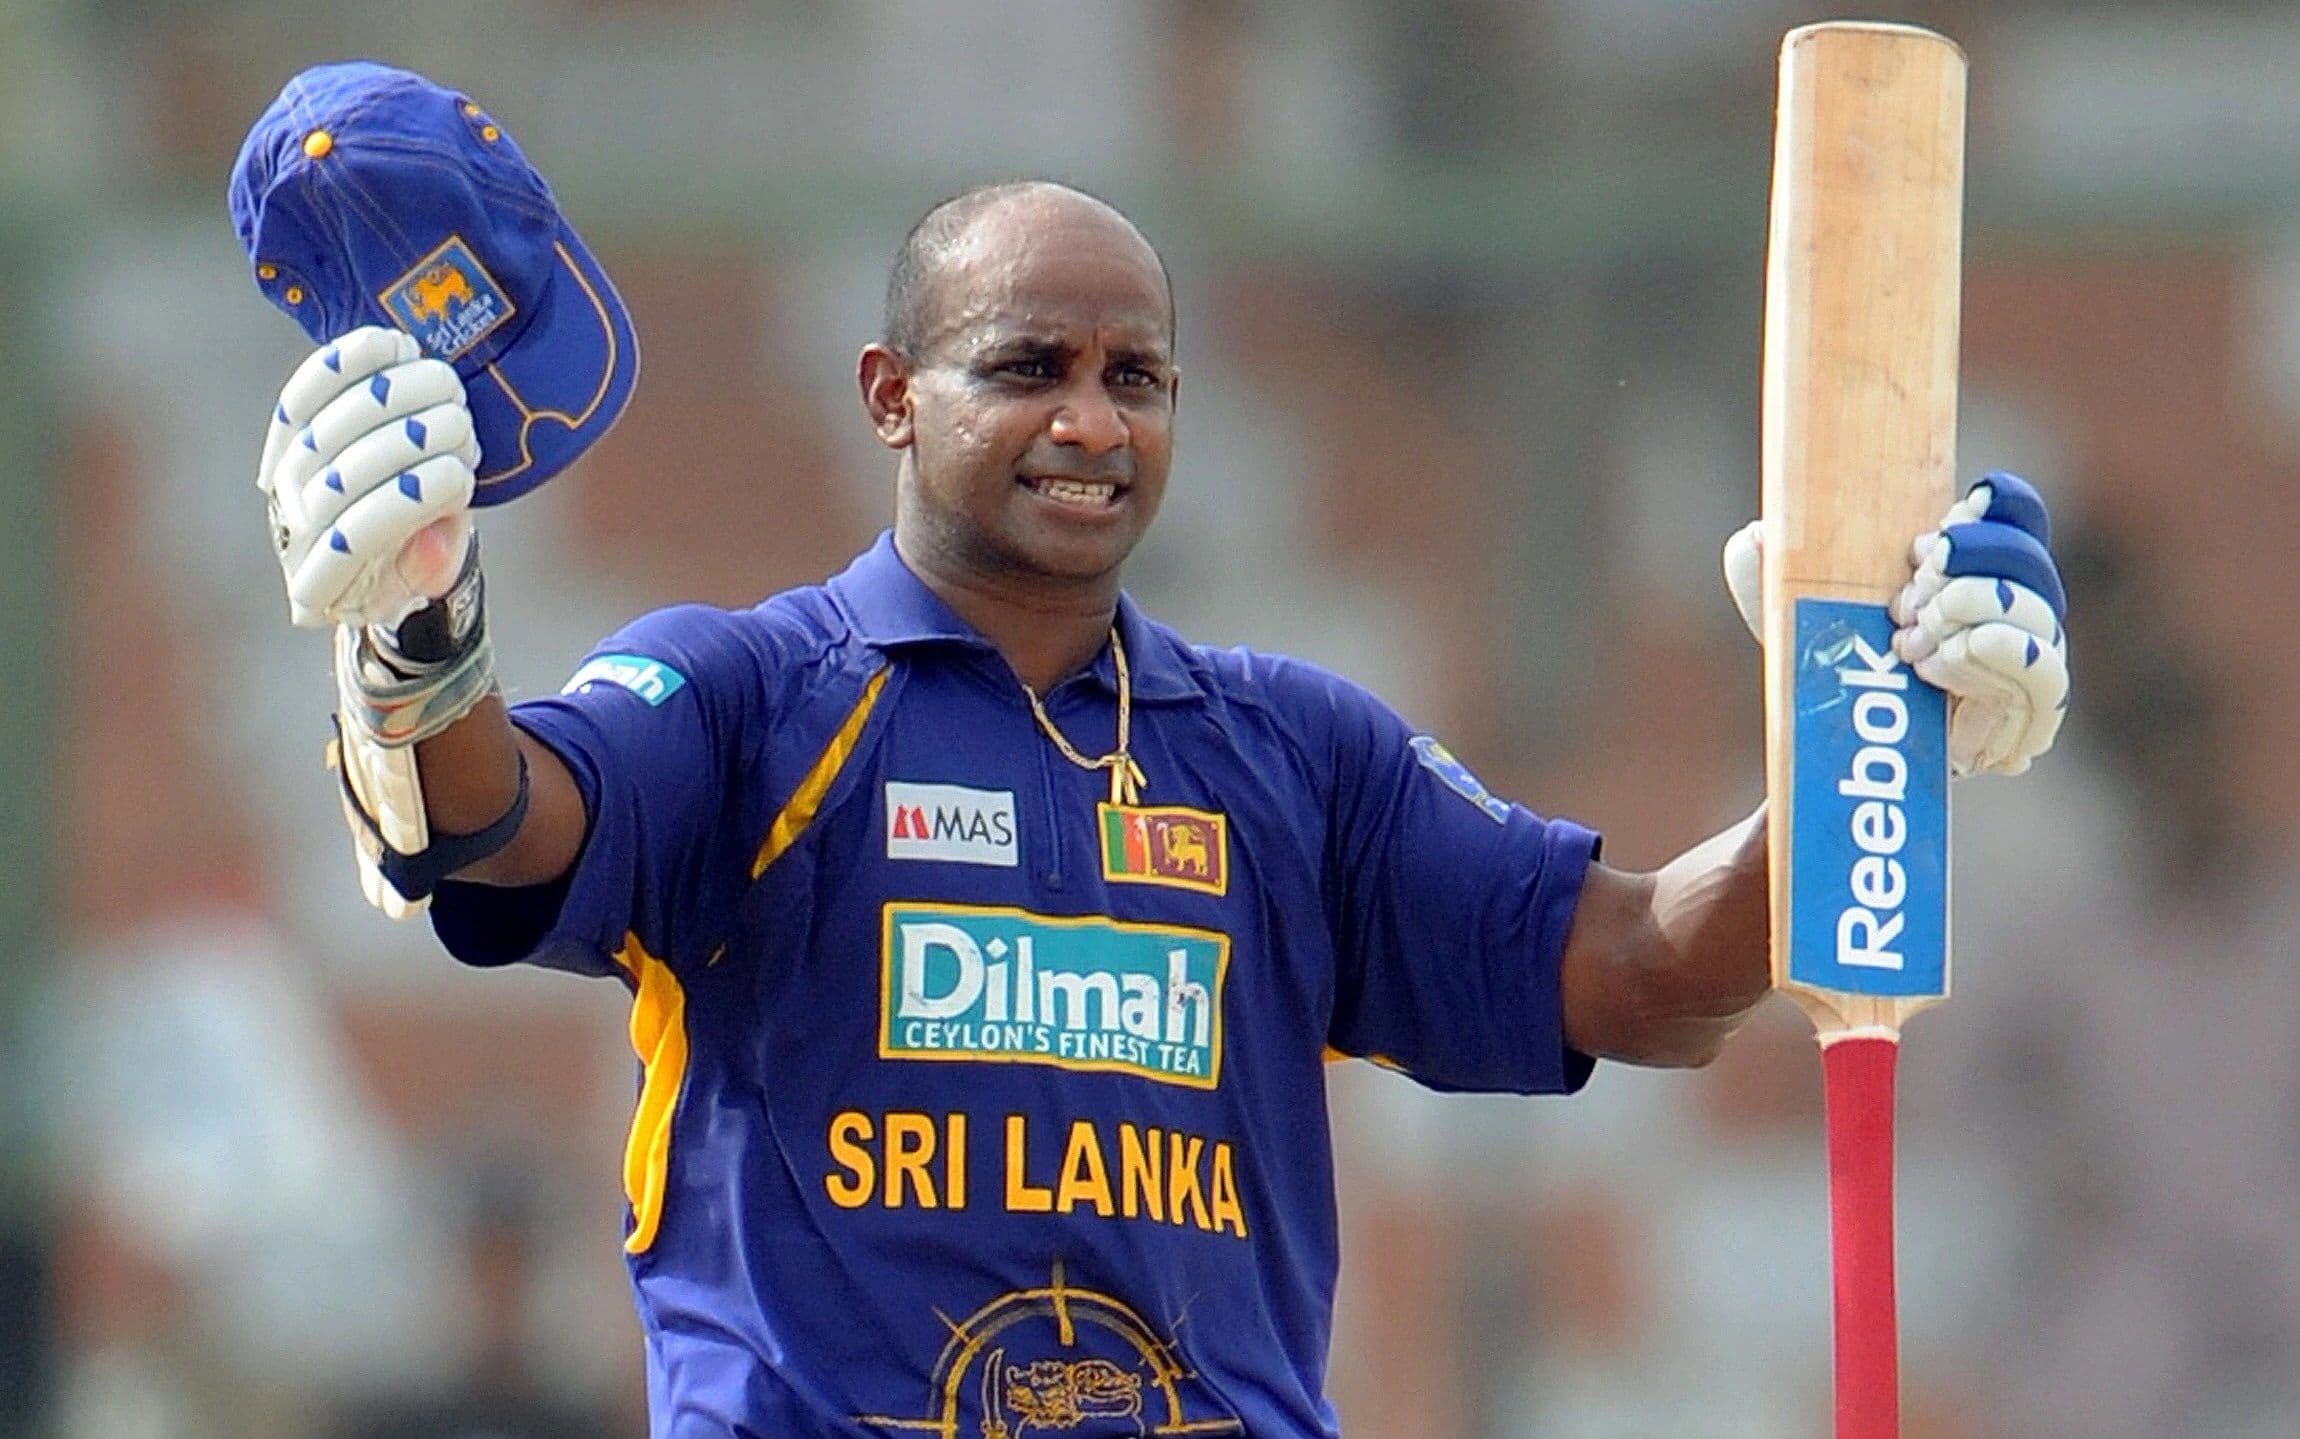 श्रीलंका के दिग्गज सलामी बल्लेबाज सनथ जयसूर्या को मेलबर्न क्लब की टीम मुलग्रेव का मुख्य कोच बनाया गया है.